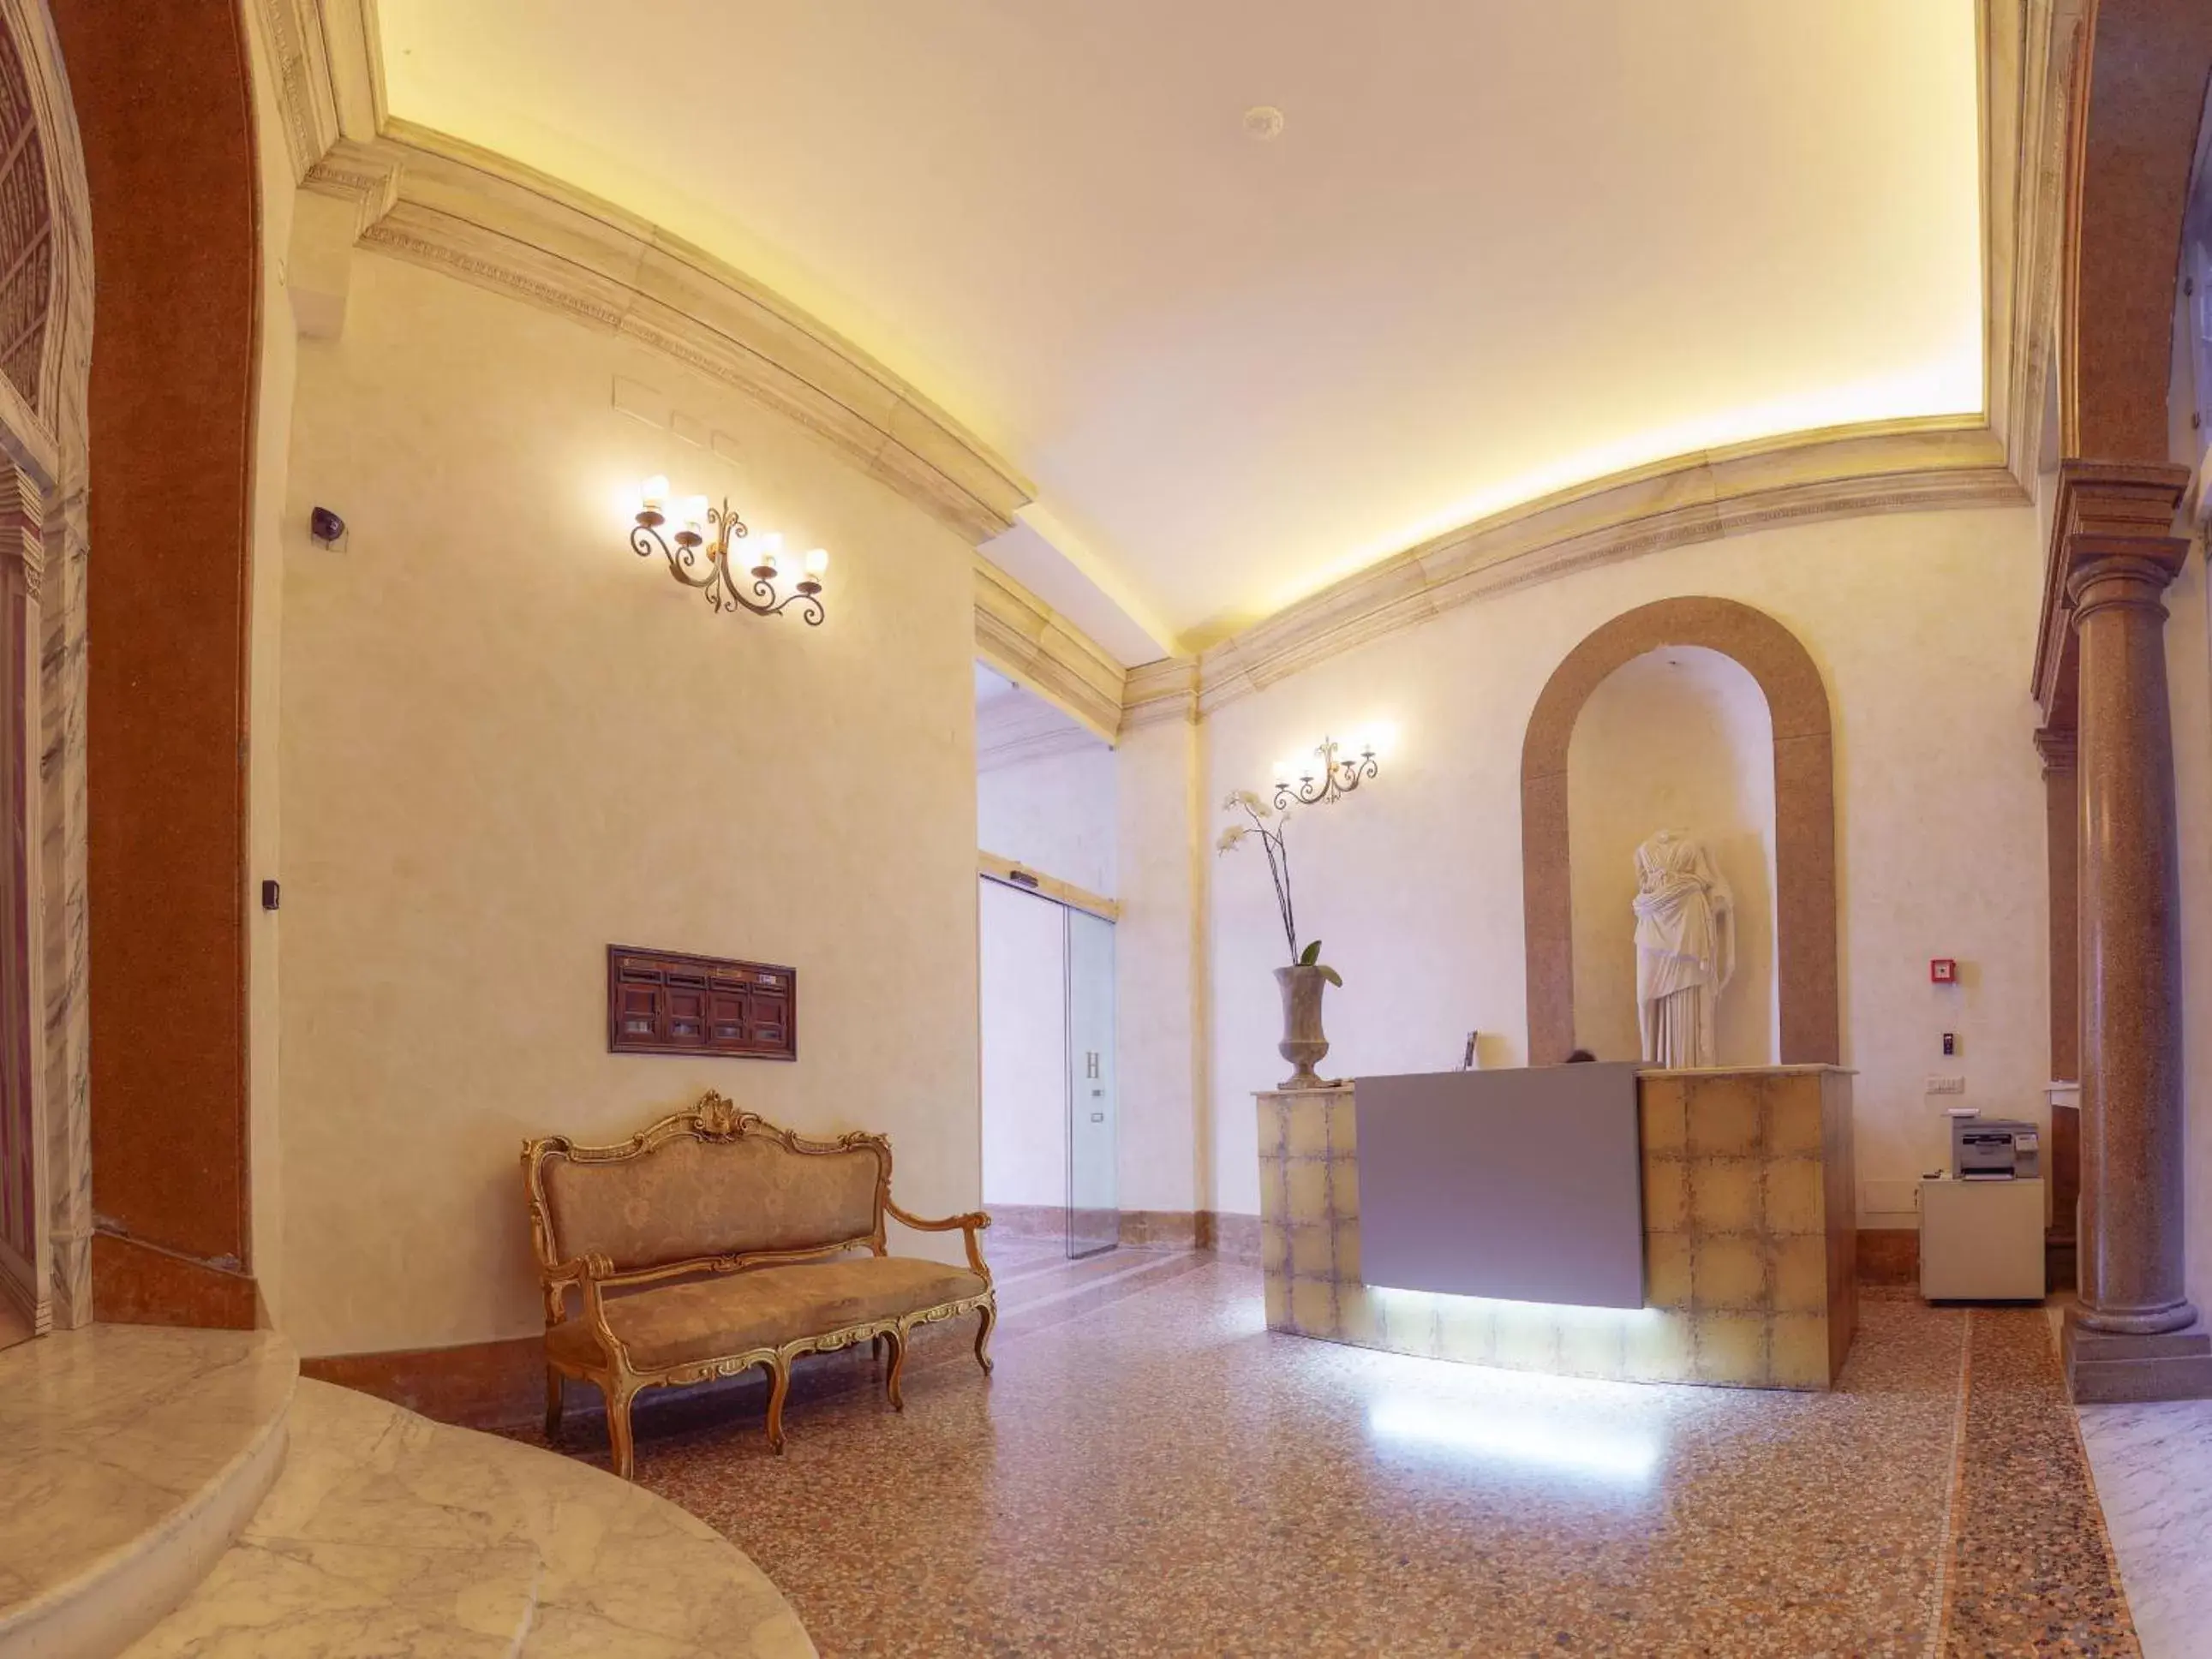 Lobby or reception, Lobby/Reception in Antica Dimora Delle Cinque Lune